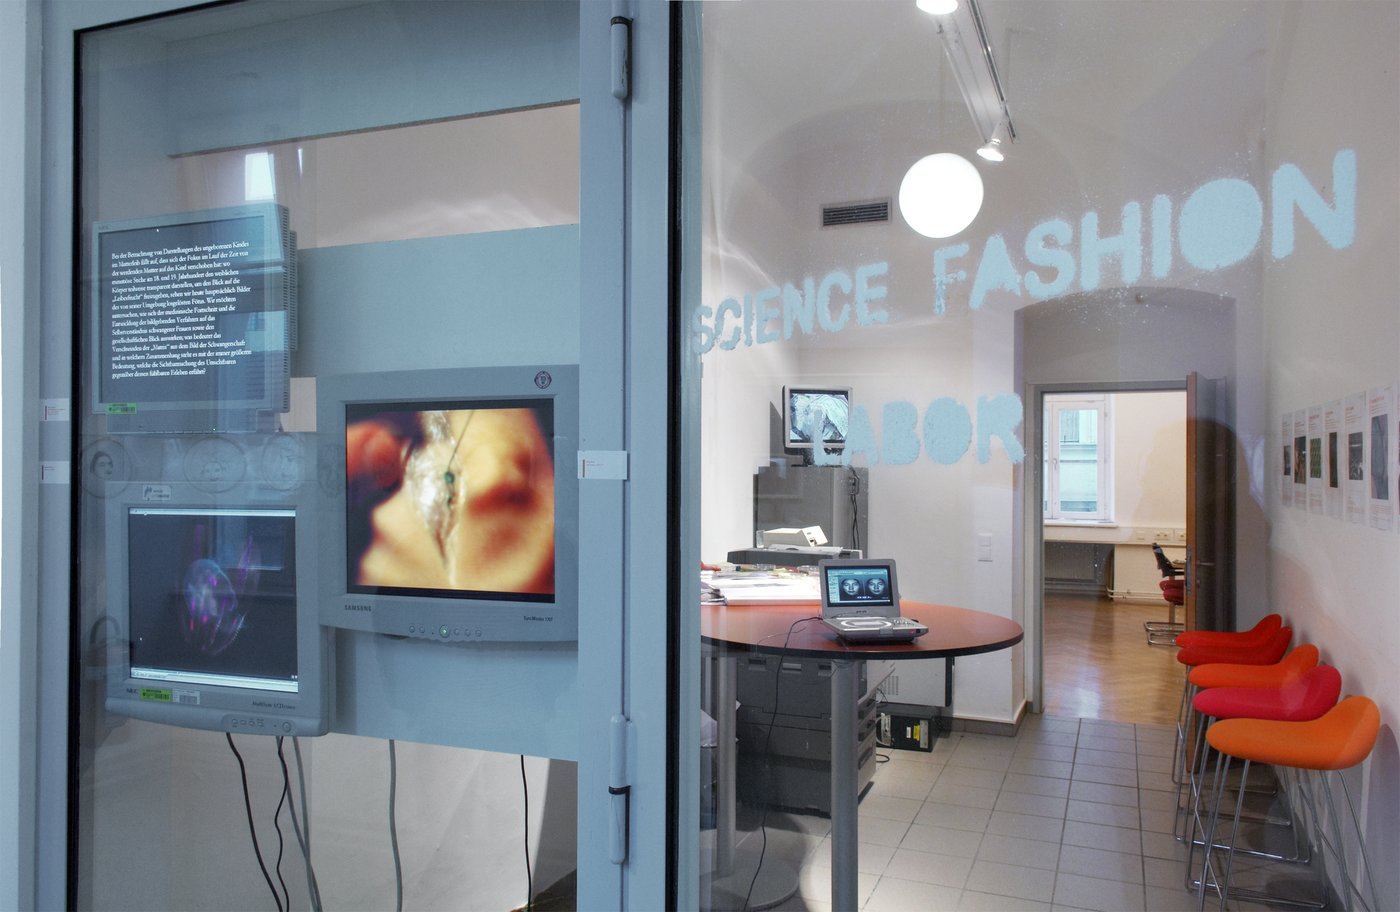 Man sieht den Eingang zum Science Fashion Labor mit mehreren Monitoren, einem Tisch und orangen Sesseln.